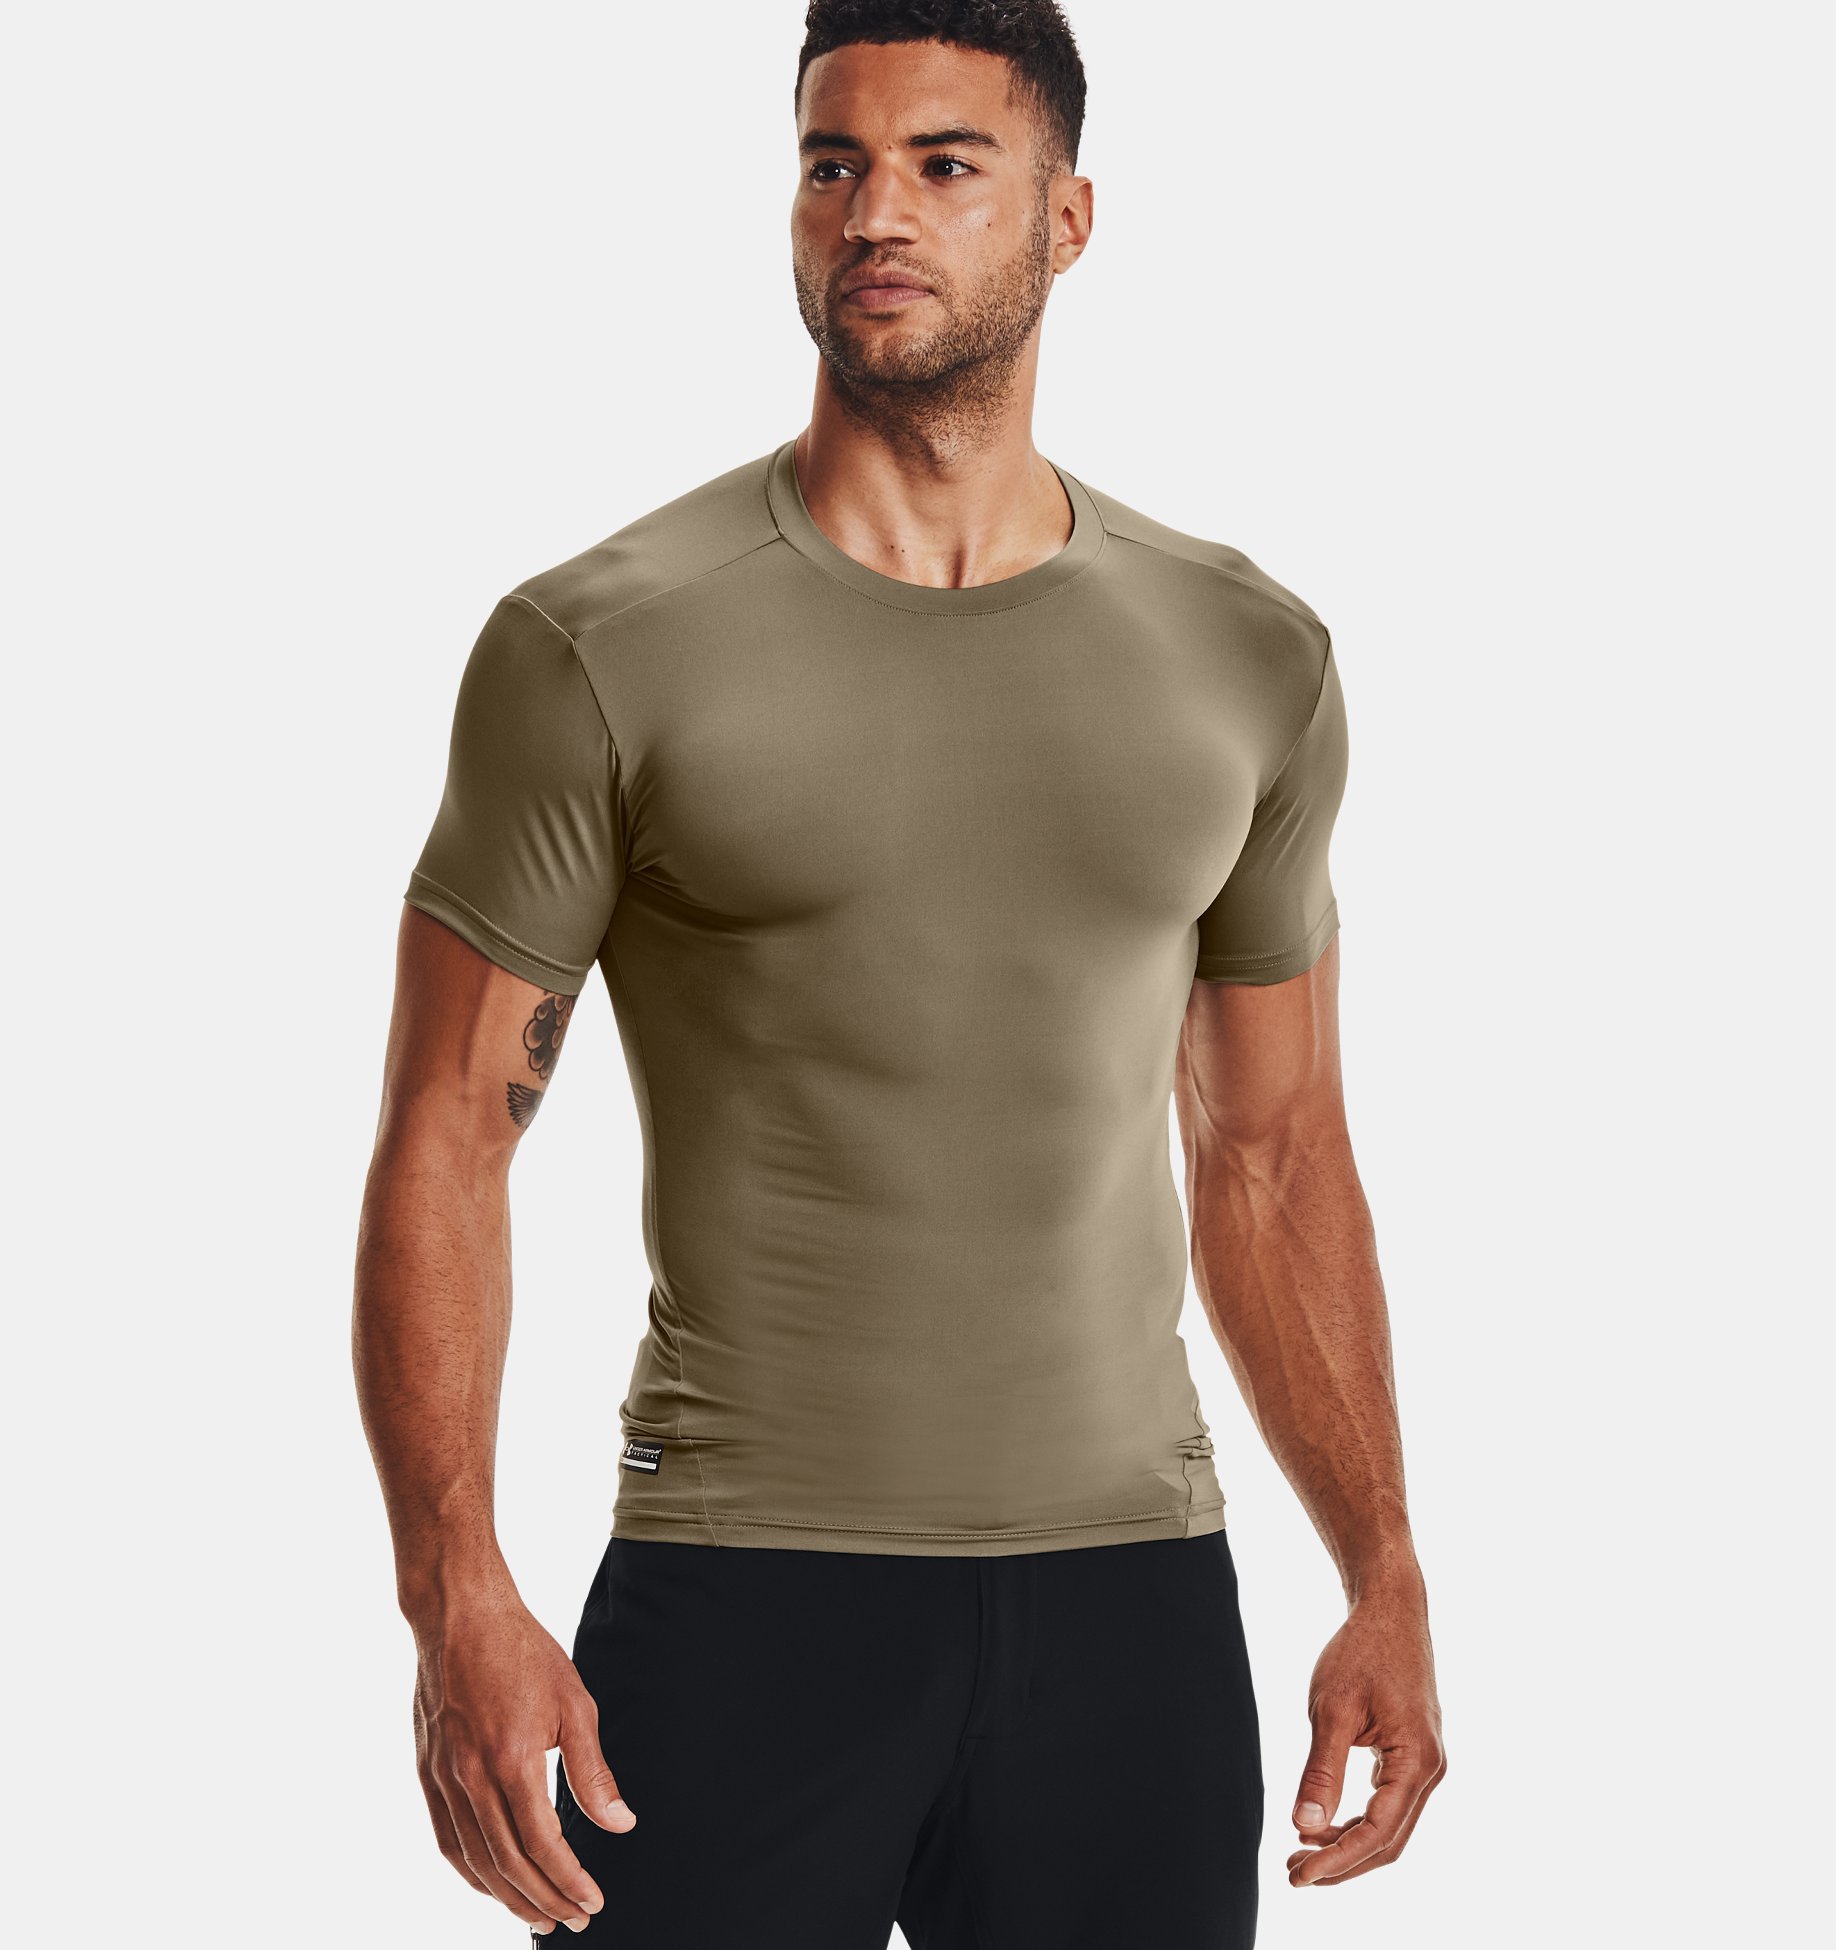 Underarmour Mens Tactical HeatGear Compression Short Sleeve T-Shirt